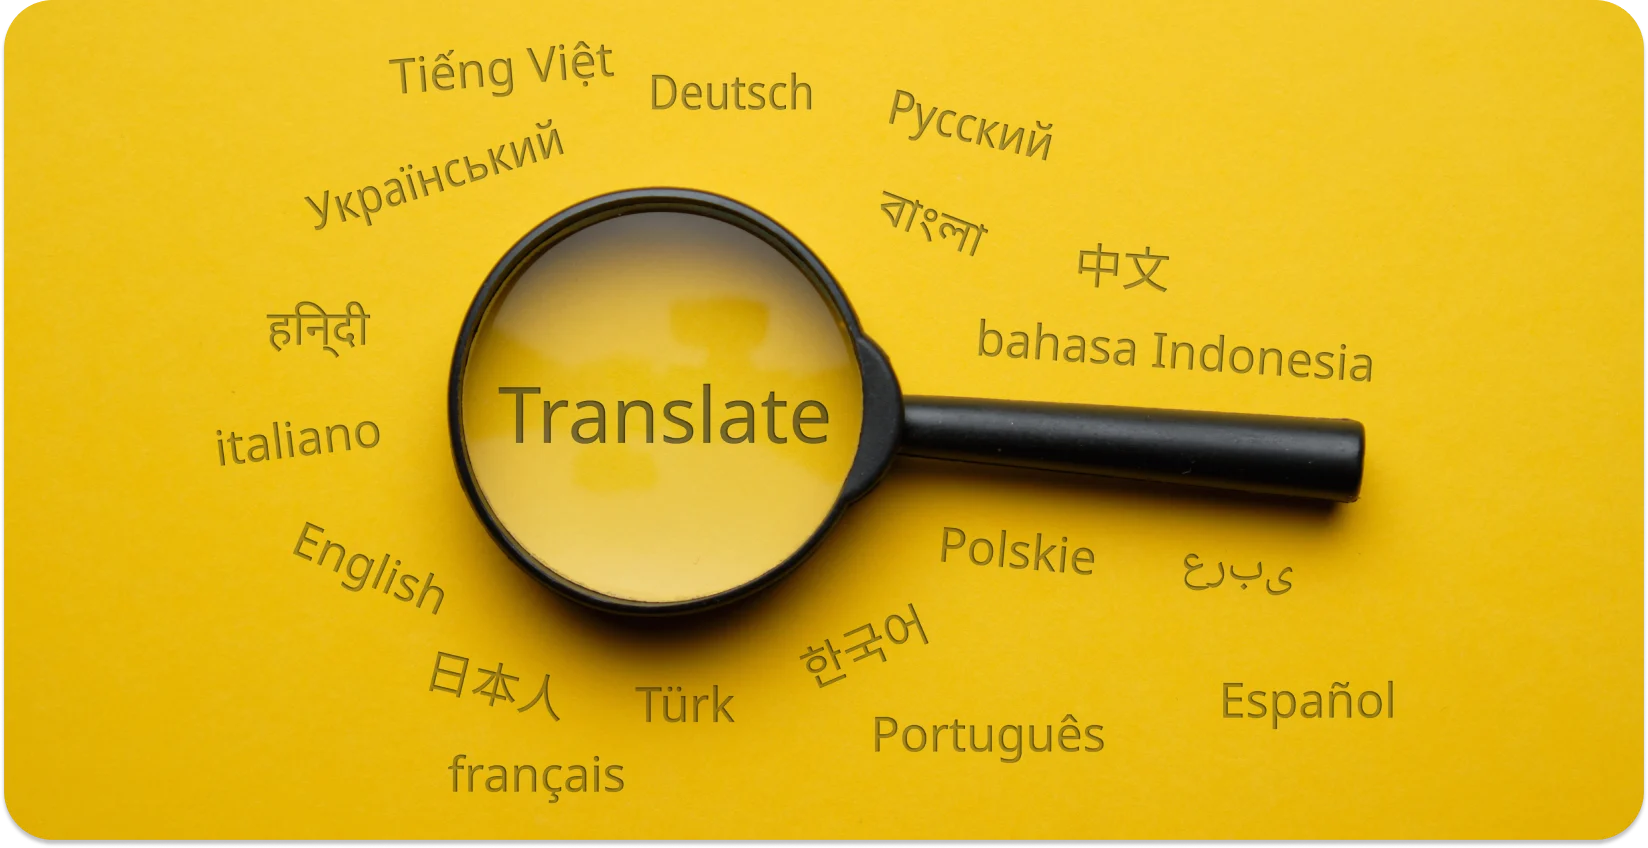 विभिन्न भाषाओं के बीच 'अनुवाद' को उजागर करने वाला आवर्धक कांच, भाषाई रूपांतरण का प्रतीक है।